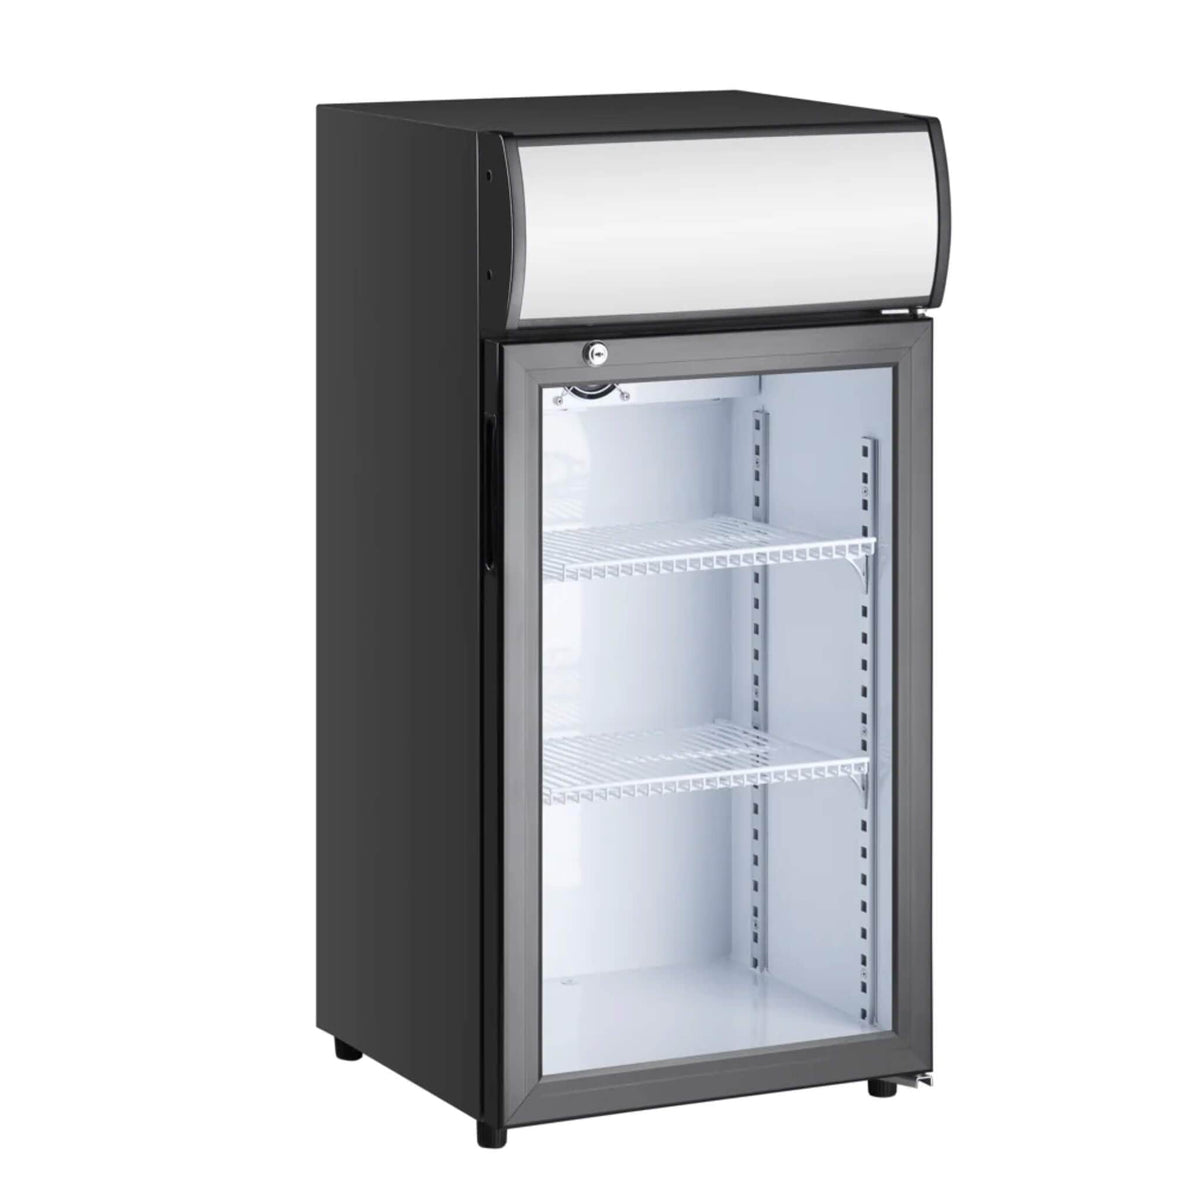 Kingsbottle Display Beverage Cooler Commercial Refrigerator